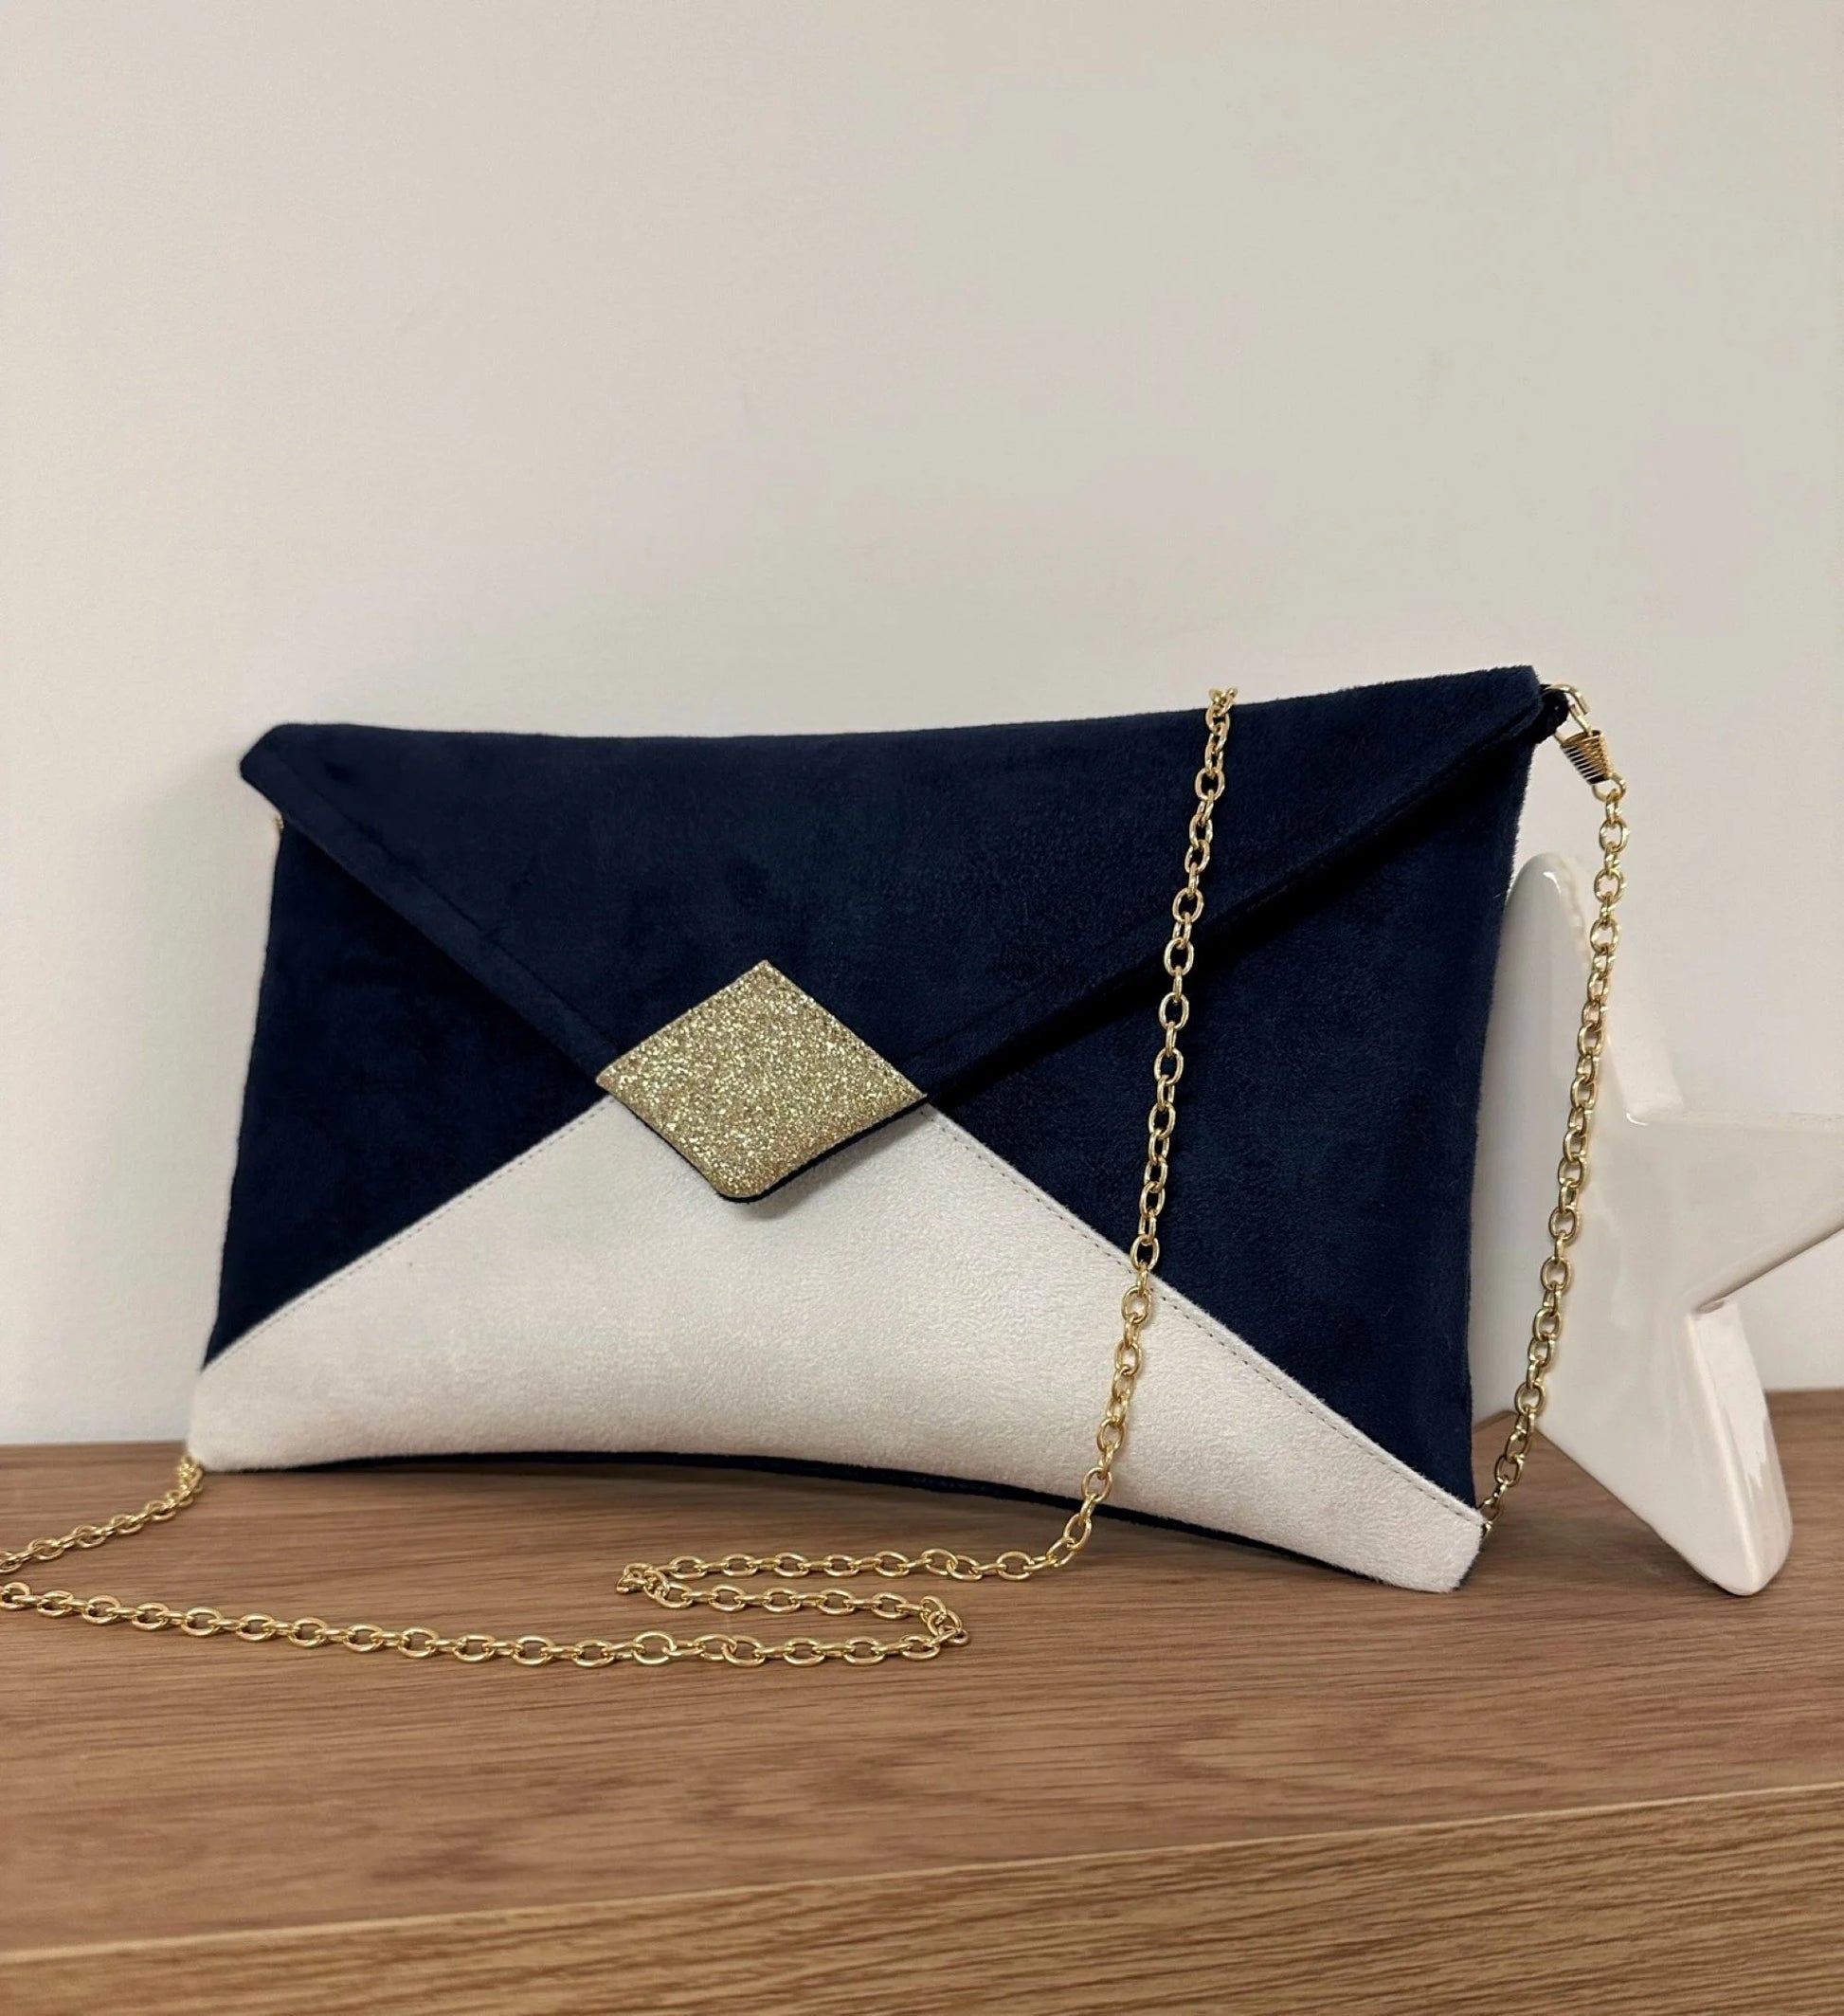 Le sac pochette Isa bleu marine et blanc à paillettes dorées, avec chainette amovible.